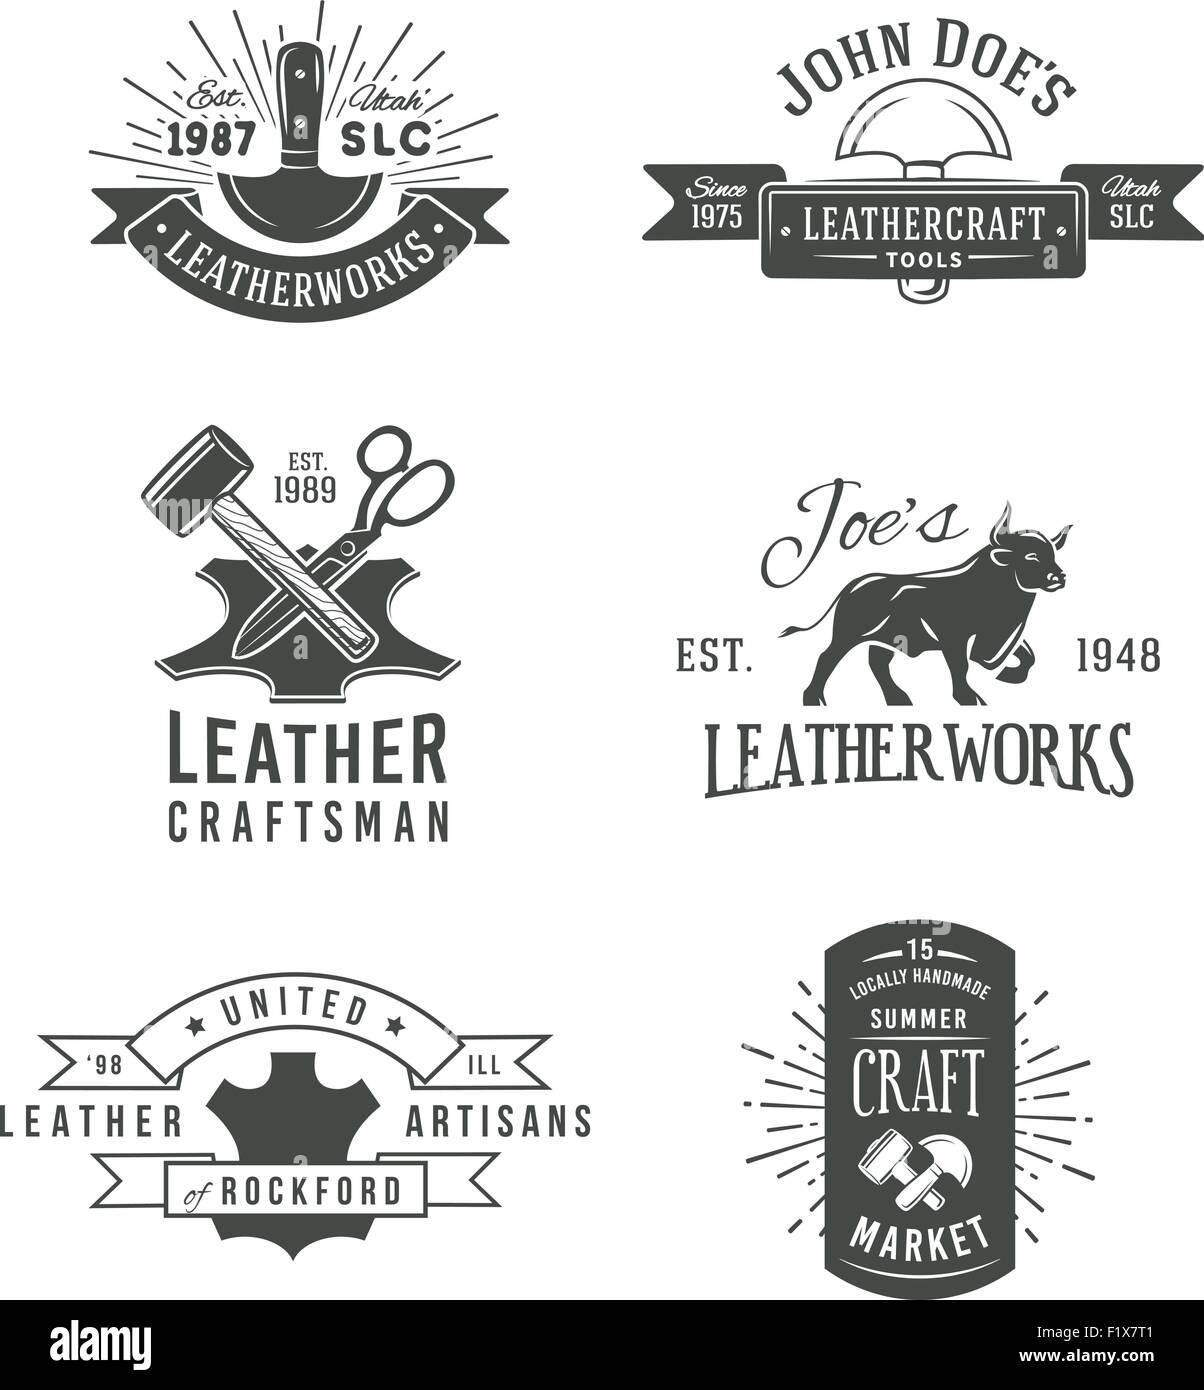 Première série de vecteur gris vintage craft dessins de logos, étiquettes outil cuir véritable rétro. Marché des artisans insignia illustration Illustration de Vecteur